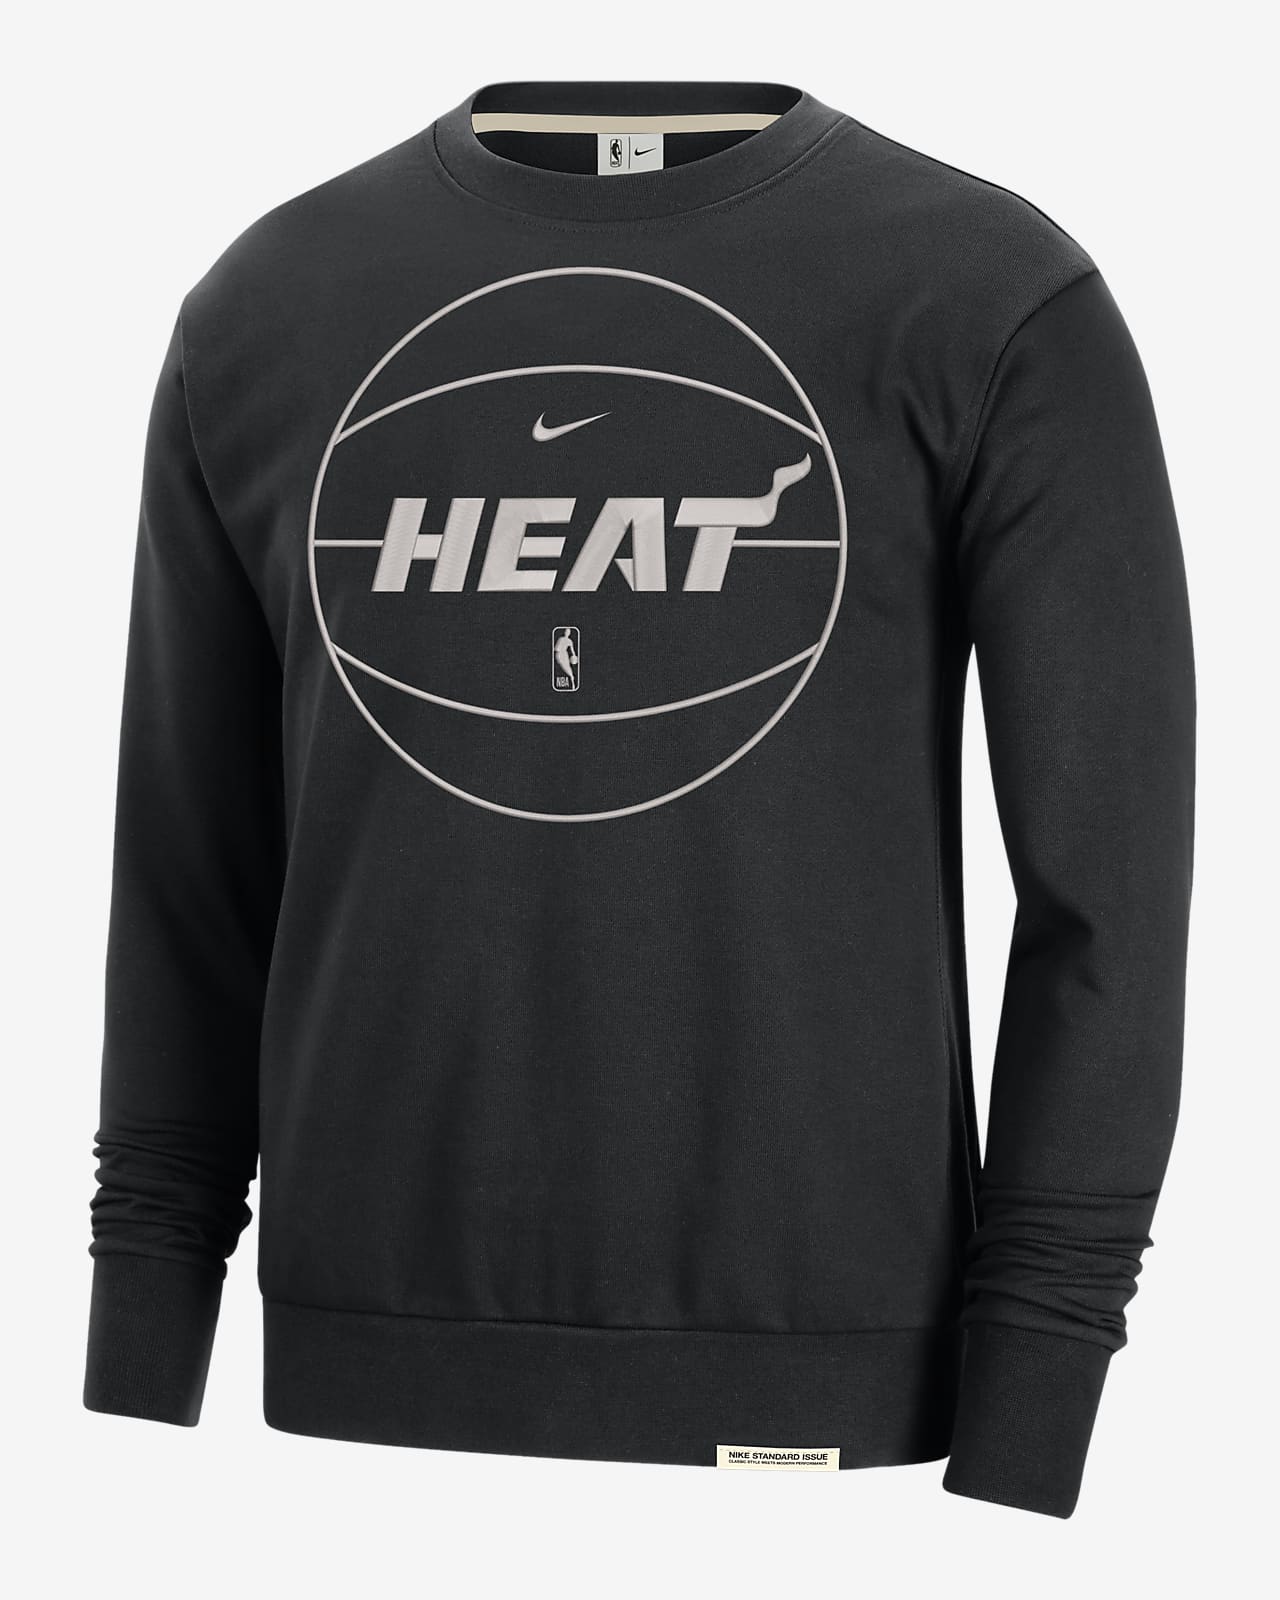 Miami Heat Standard Issue Nike Dri-FIT NBA-Sweatshirt für Herren